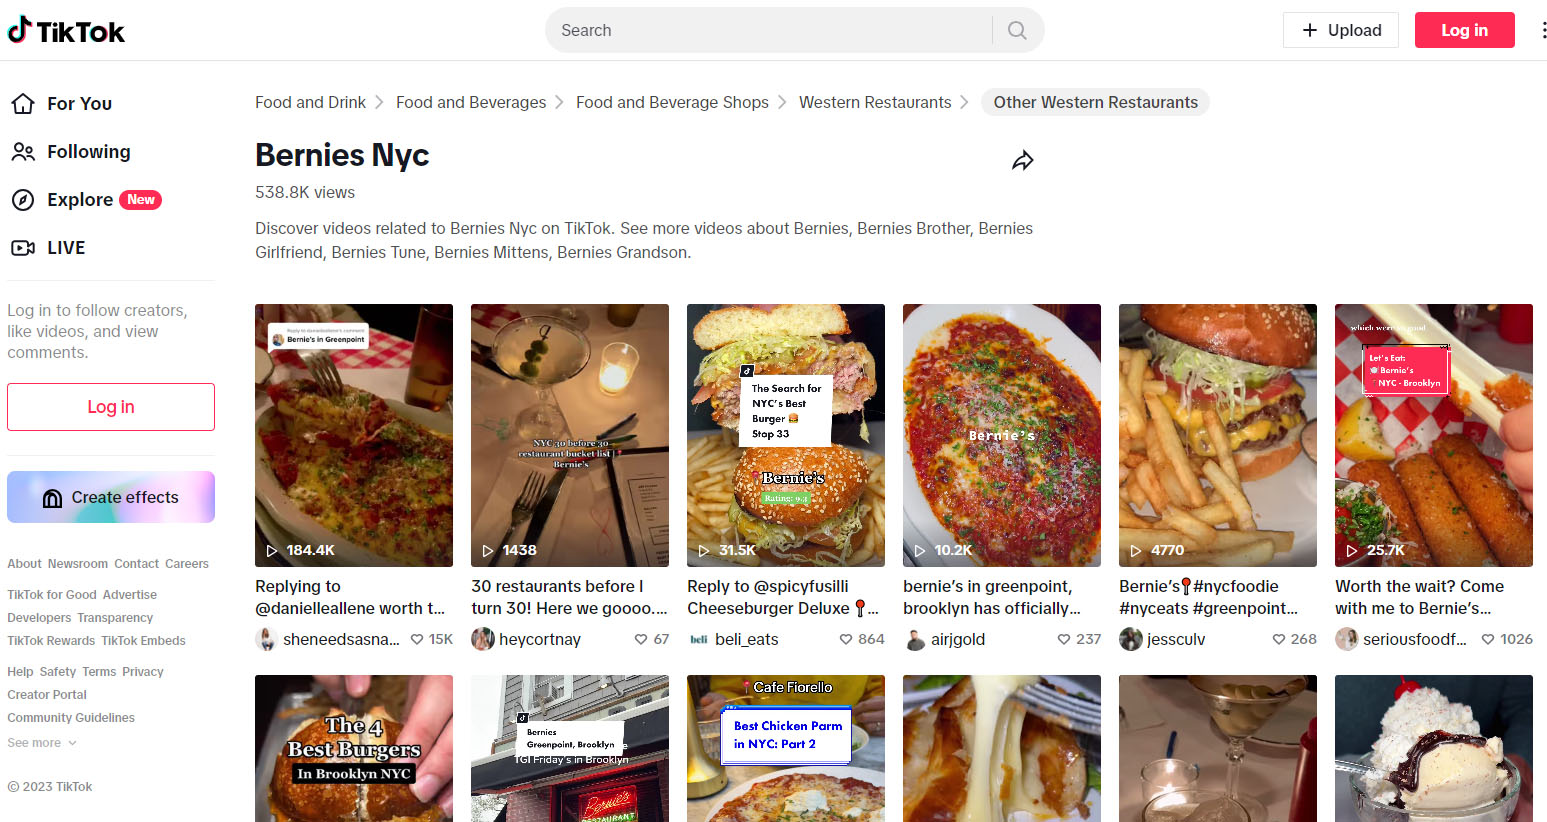 TikTok search results for Bernie's NYC.